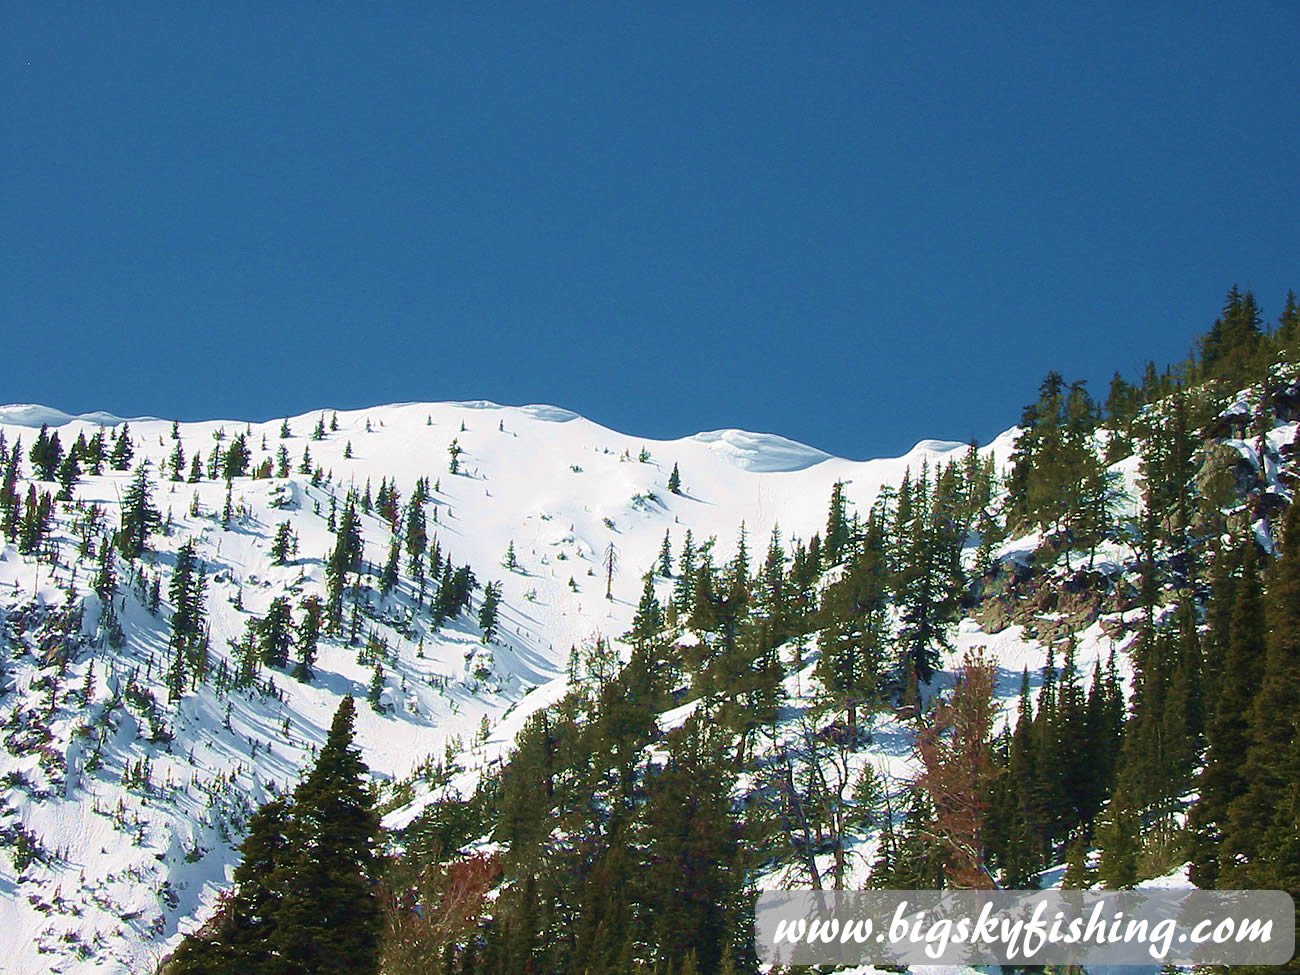 "The Ridge" at Bridger Bowl Ski Area